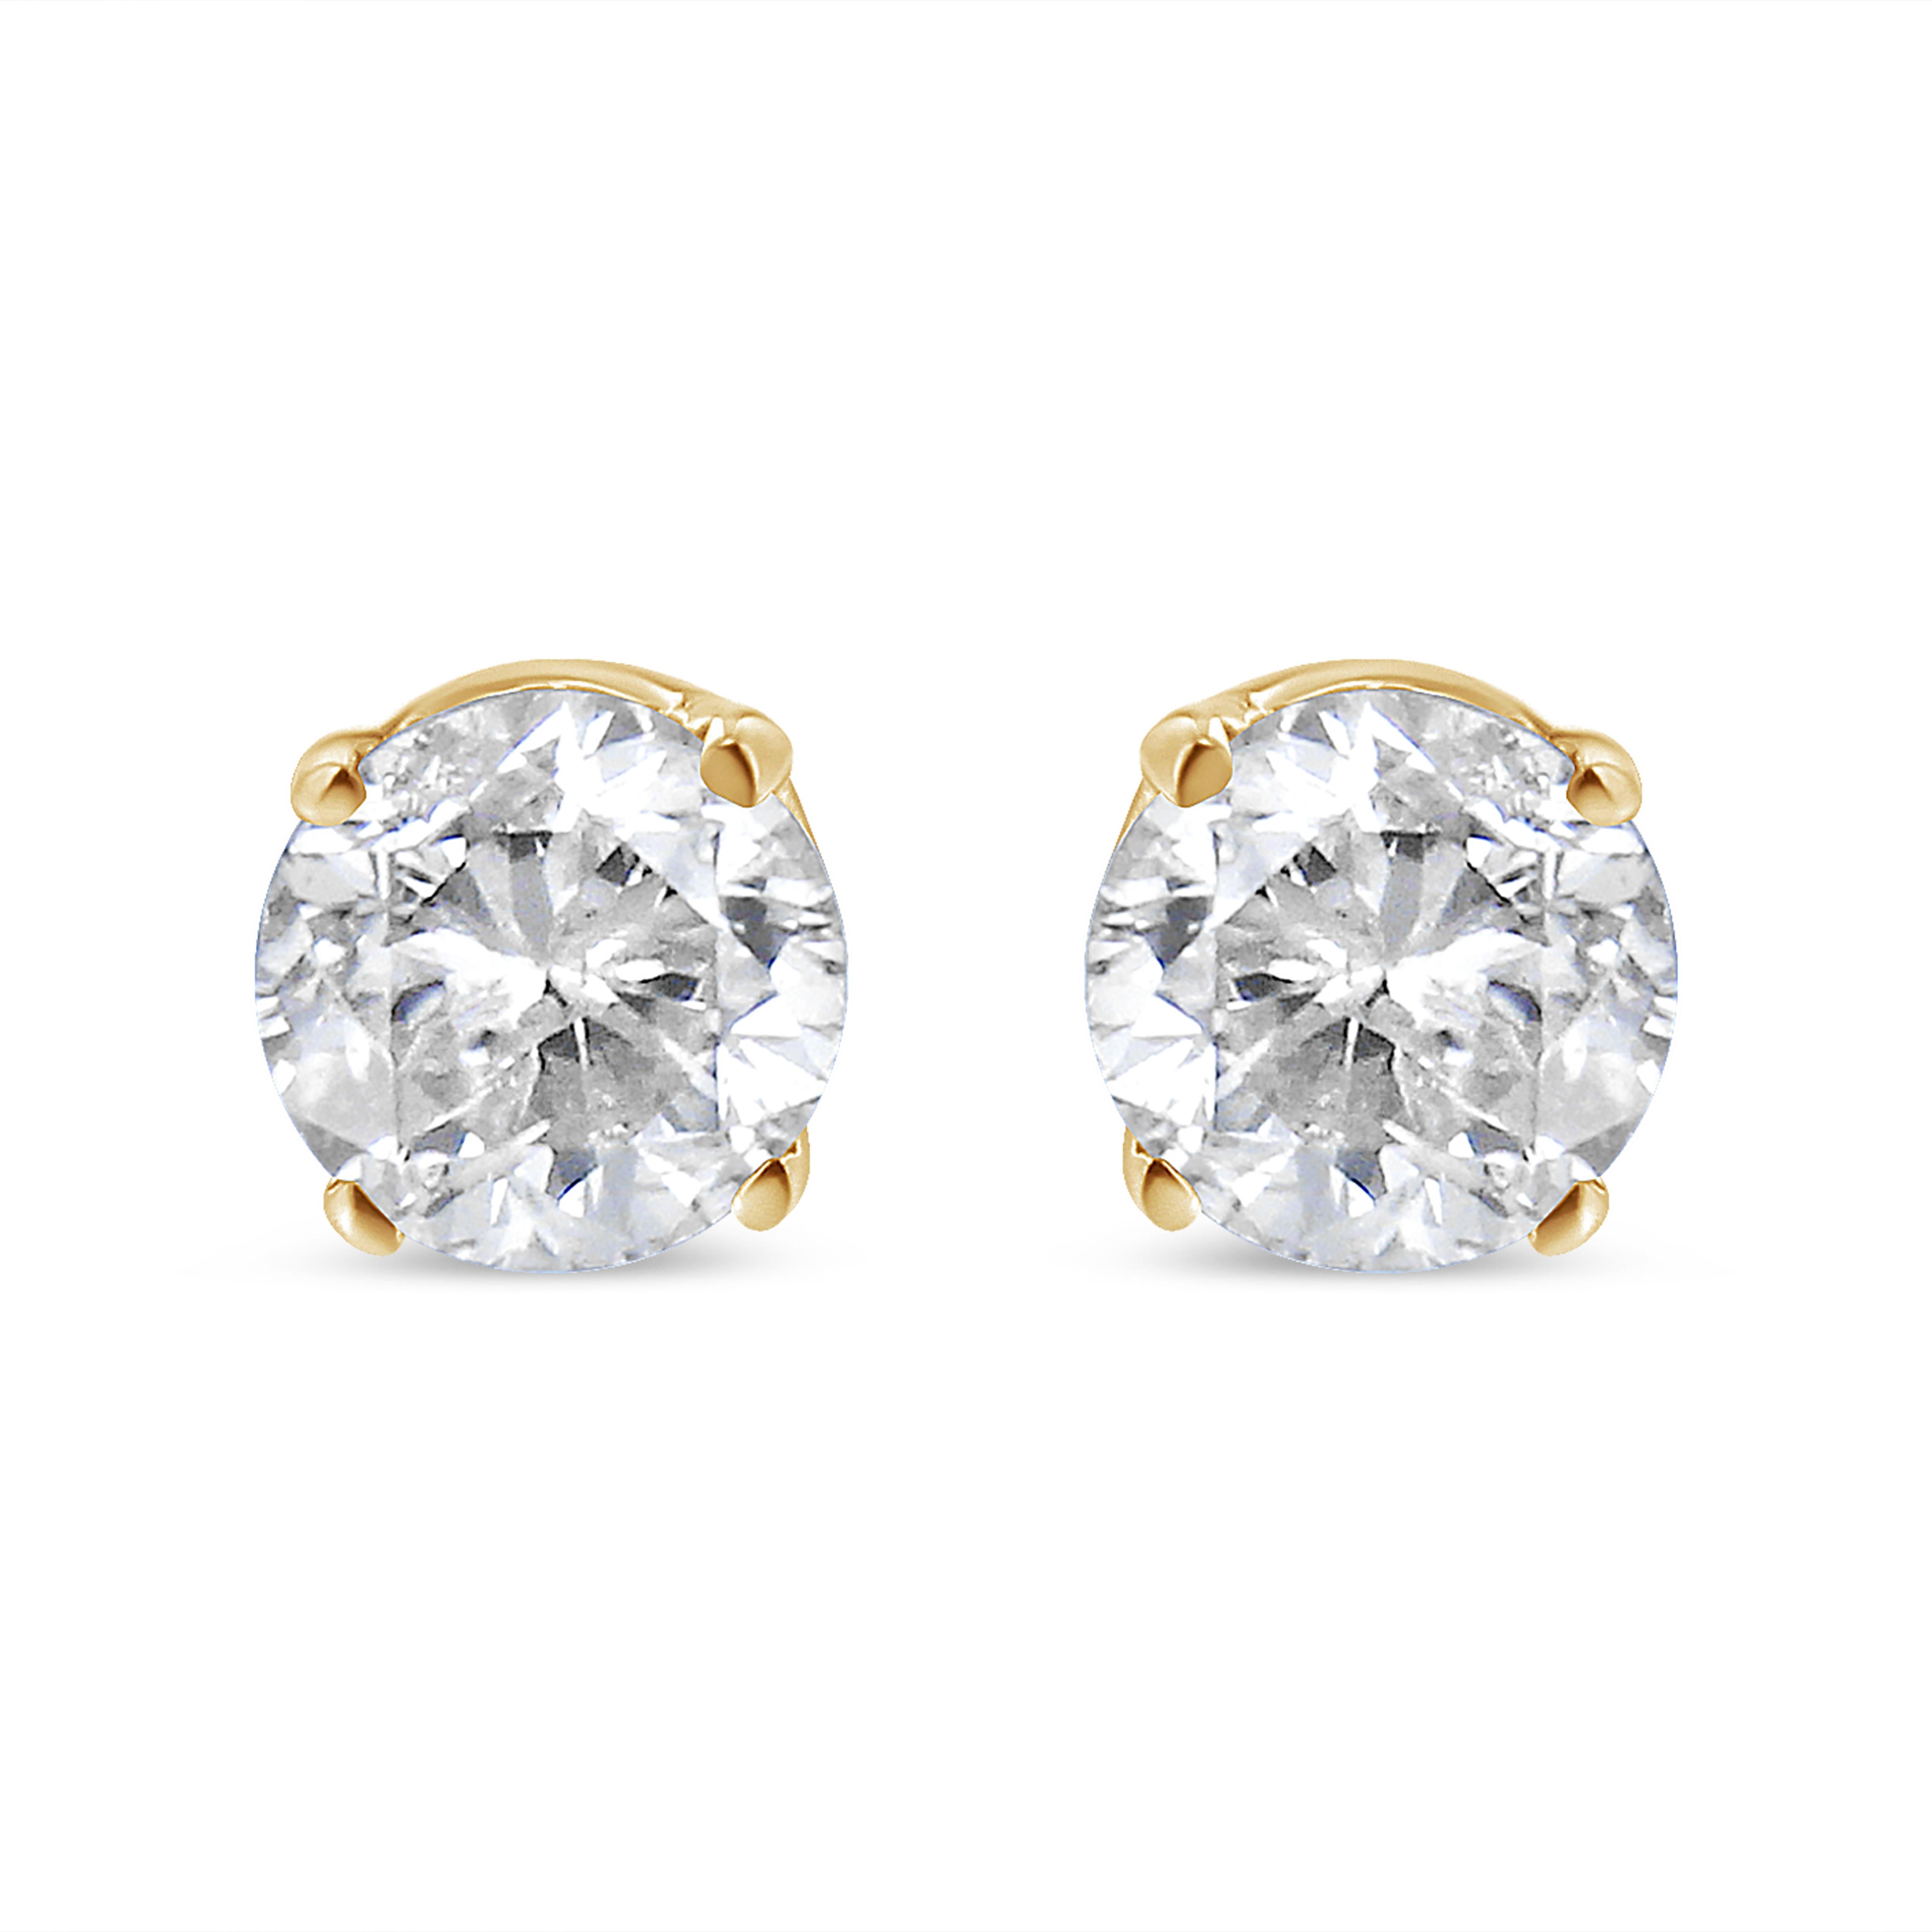 Lassen Sie sich von der zeitlosen Anziehungskraft dieser 14K Gelbgold 1/2 Cttw Round-Cut Diamond Solitaire Stud Earrings verzaubern, eine faszinierende Verkörperung von Eleganz und Raffinesse. Jeder Ohrring ist mit viel Liebe zum Detail gefertigt